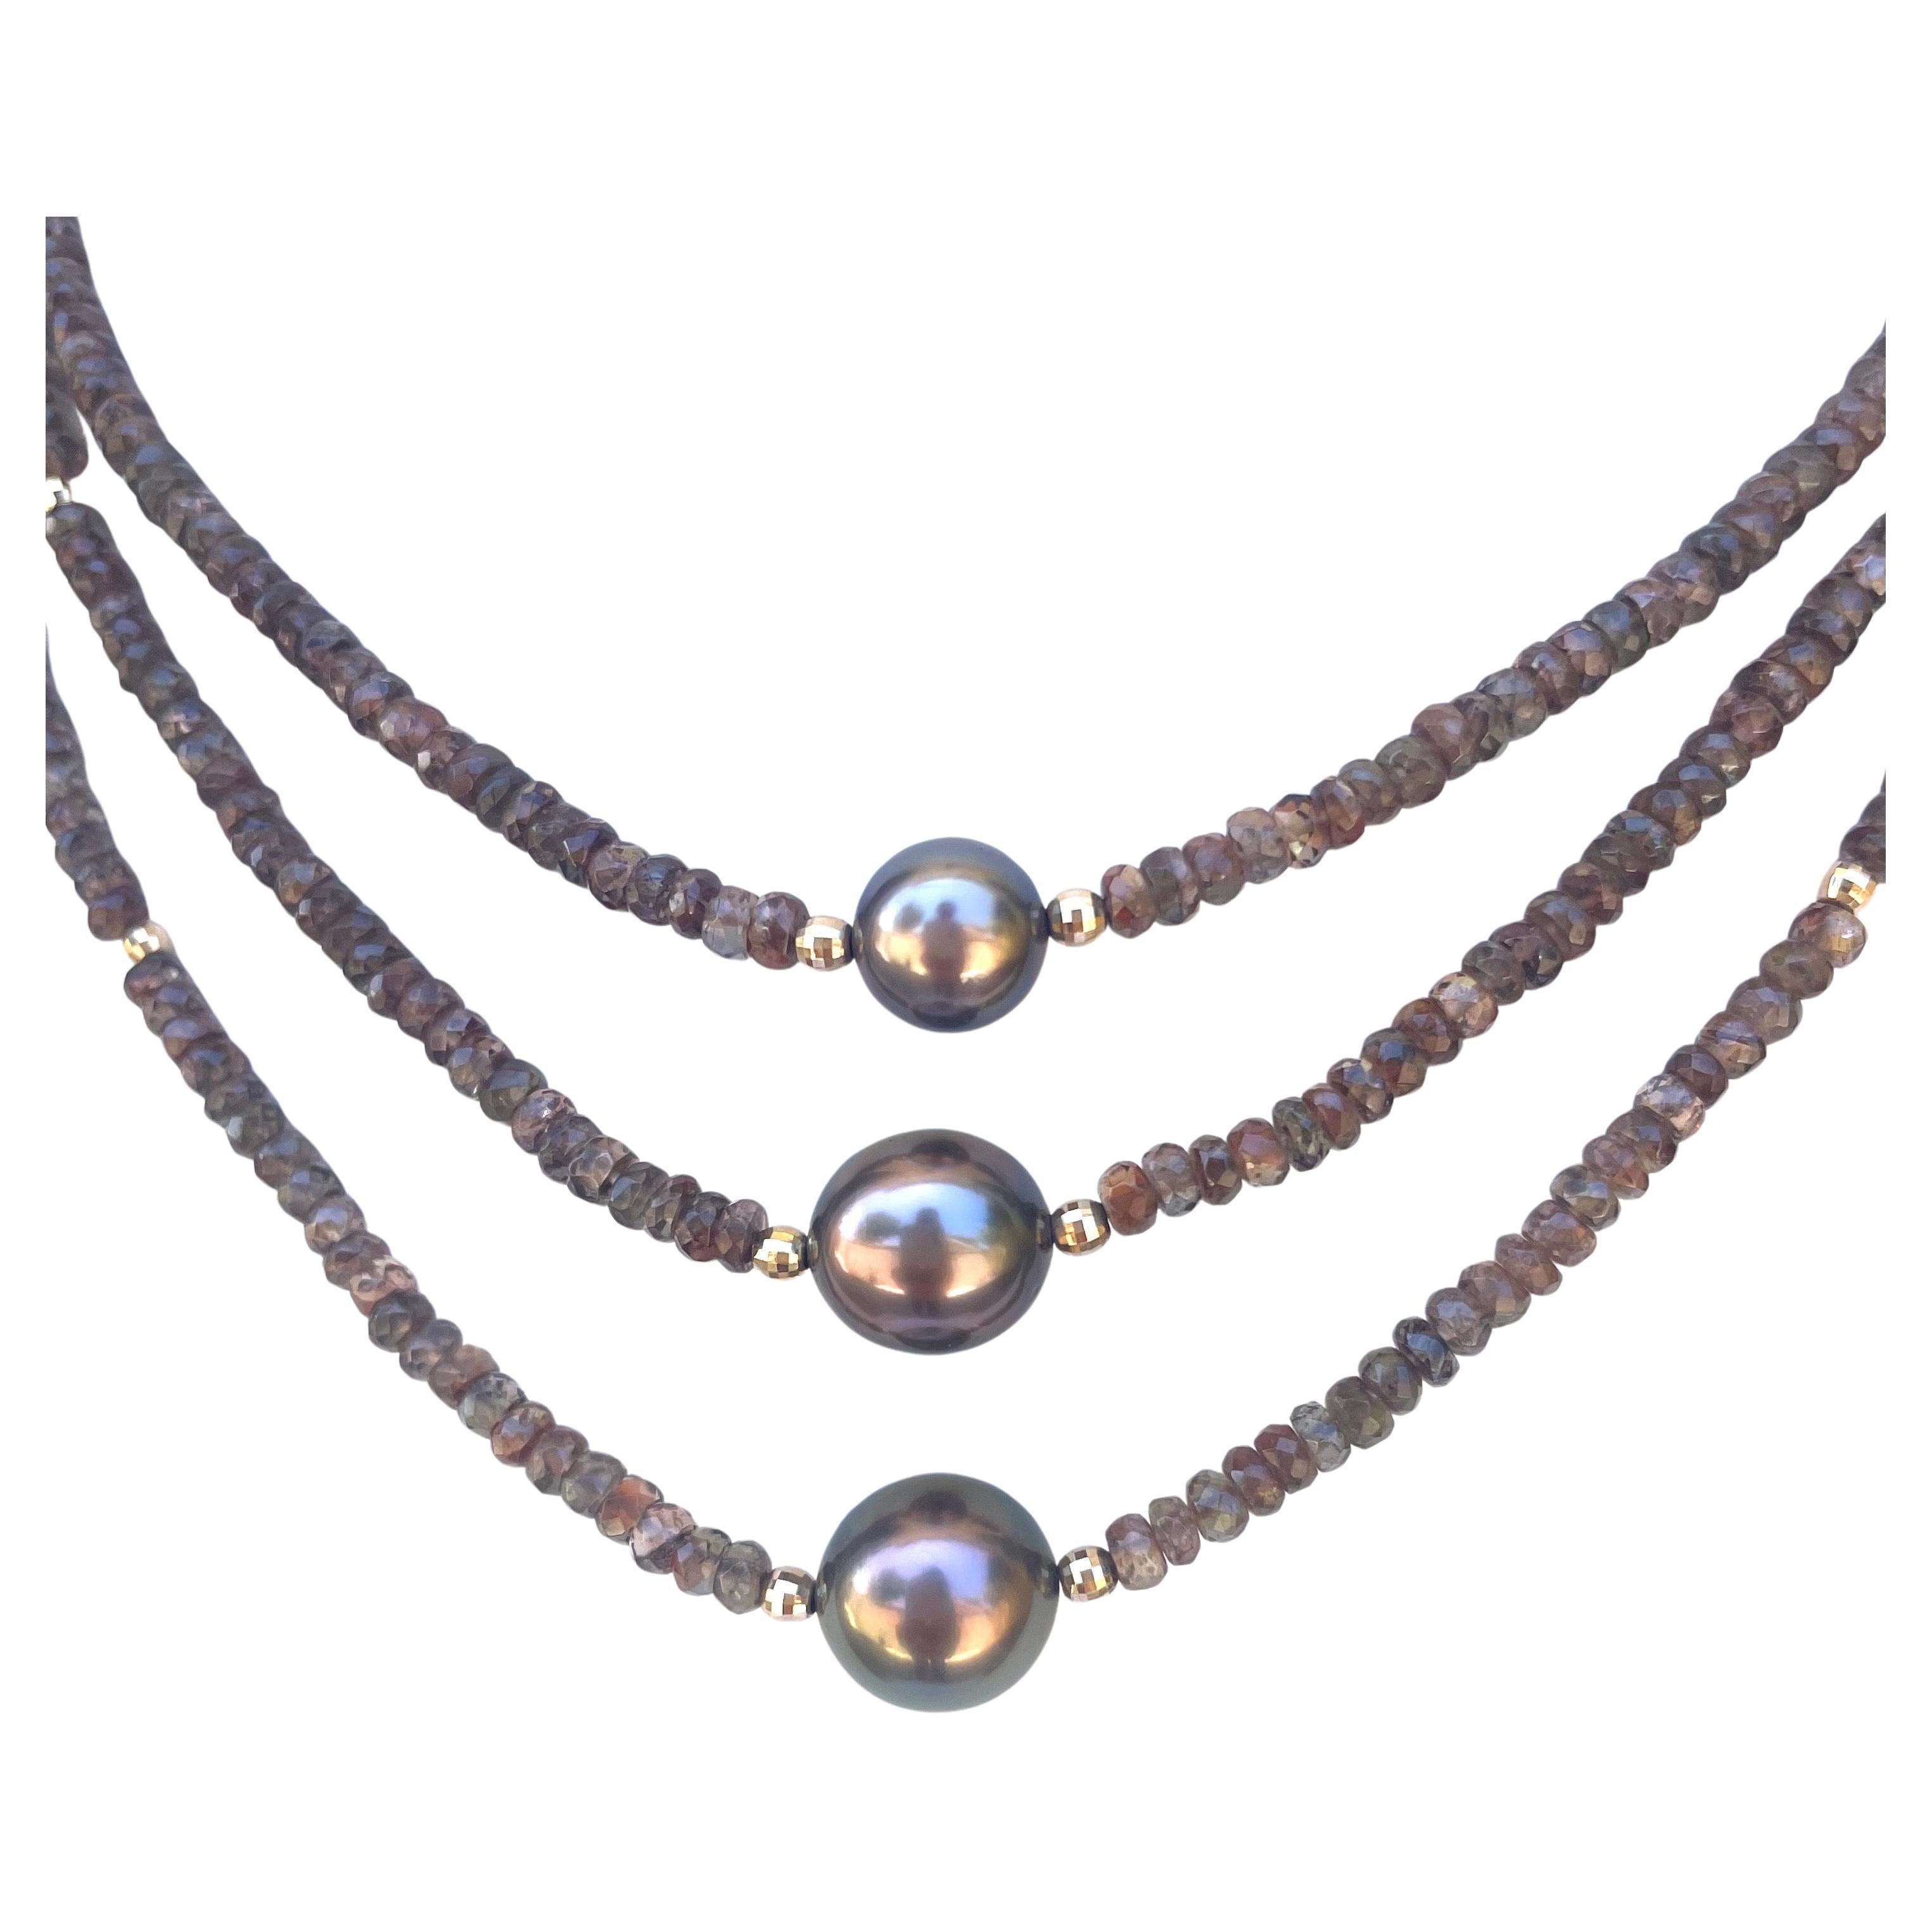 Beschreibung
Exquisite, seltene Andalusit-Mehrstrangkette in sanften Erdtönen, geschmückt mit 3 außergewöhnlich schönen und seltenen kupferfarbenen Tahiti-Perlen.
Artikel Nr. N3744

MATERIALIEN und Gewicht
Andalusit 4mm, 166cts,